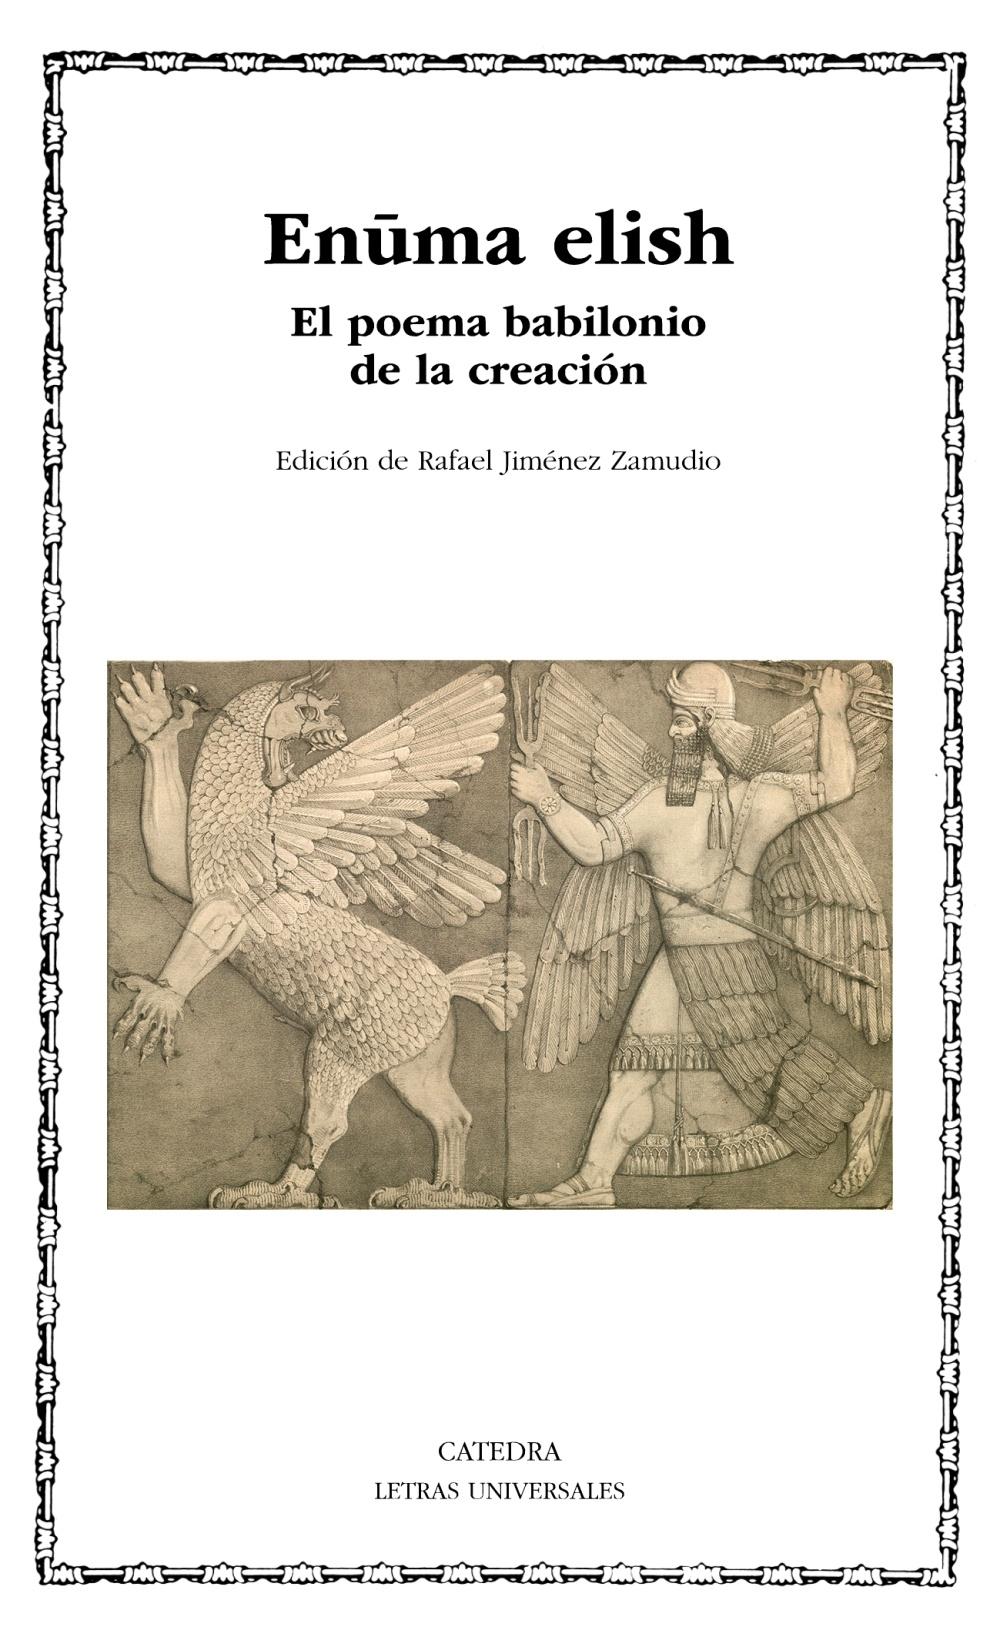 Enuma elish "El poema babilonio de la creación". 